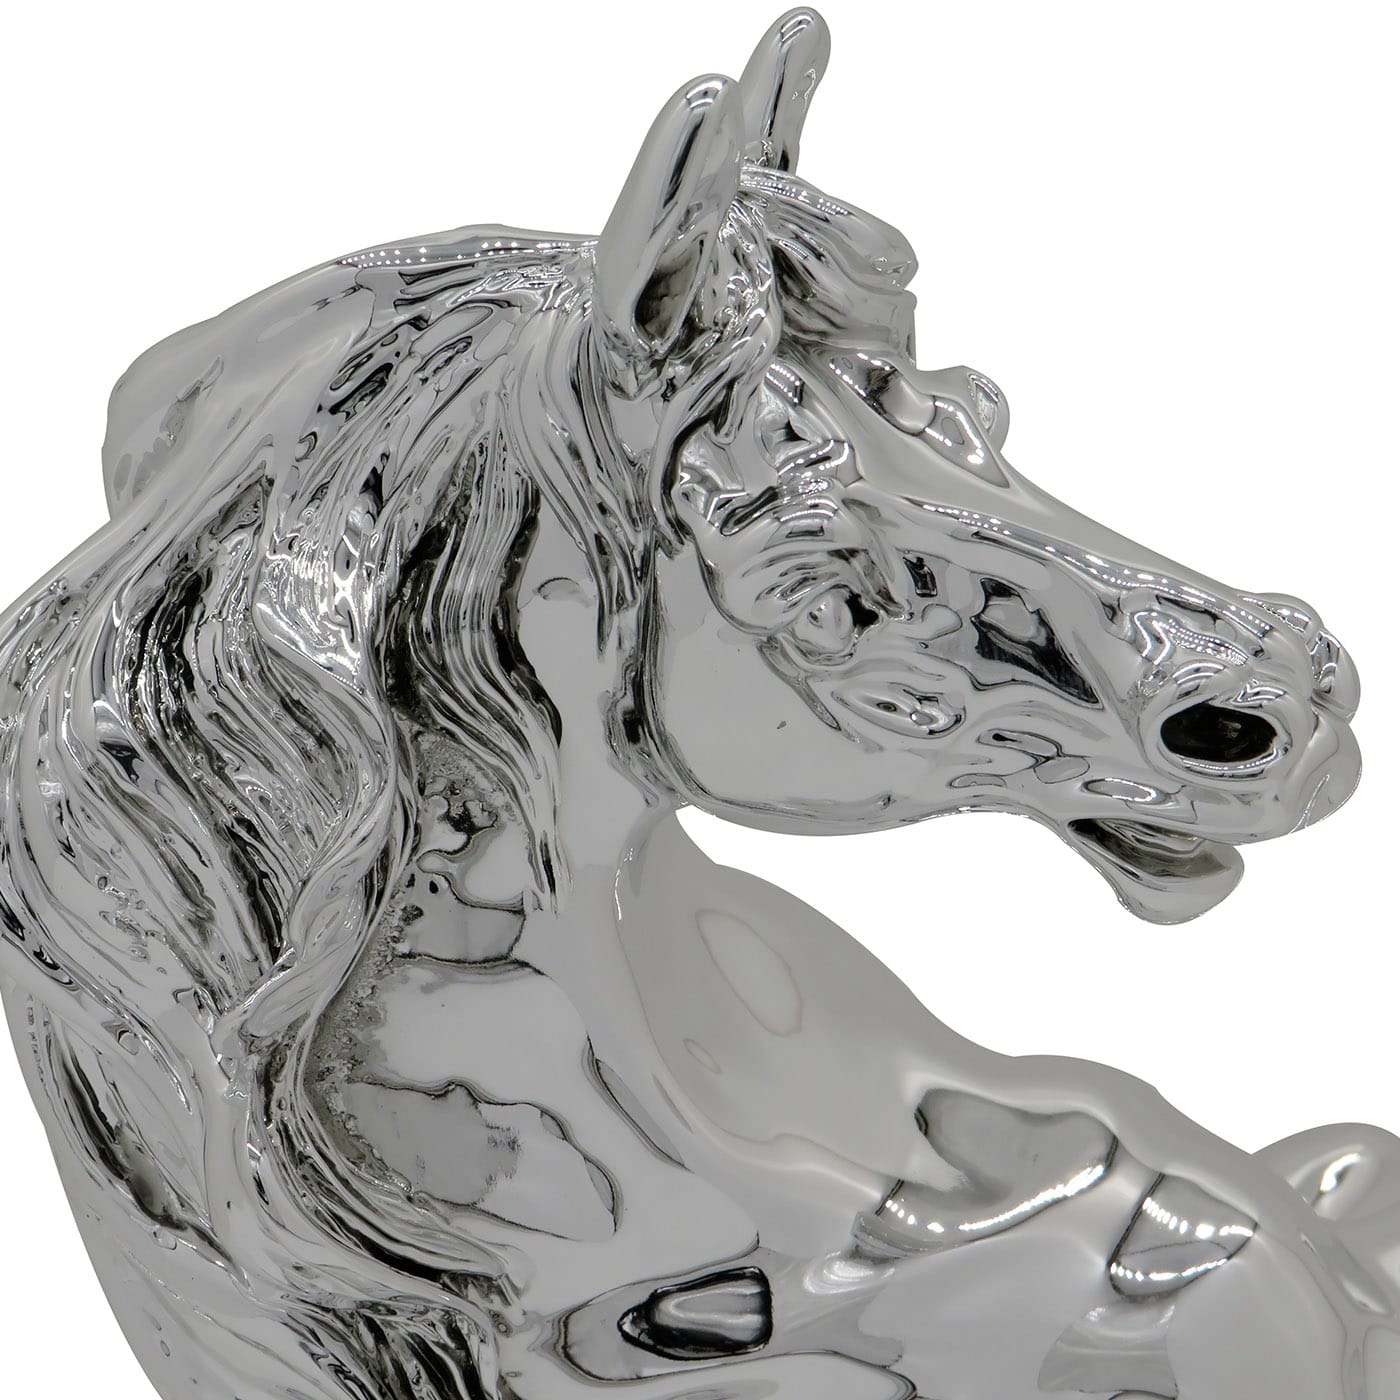 Cavallo Rampante Statuette - Diadema